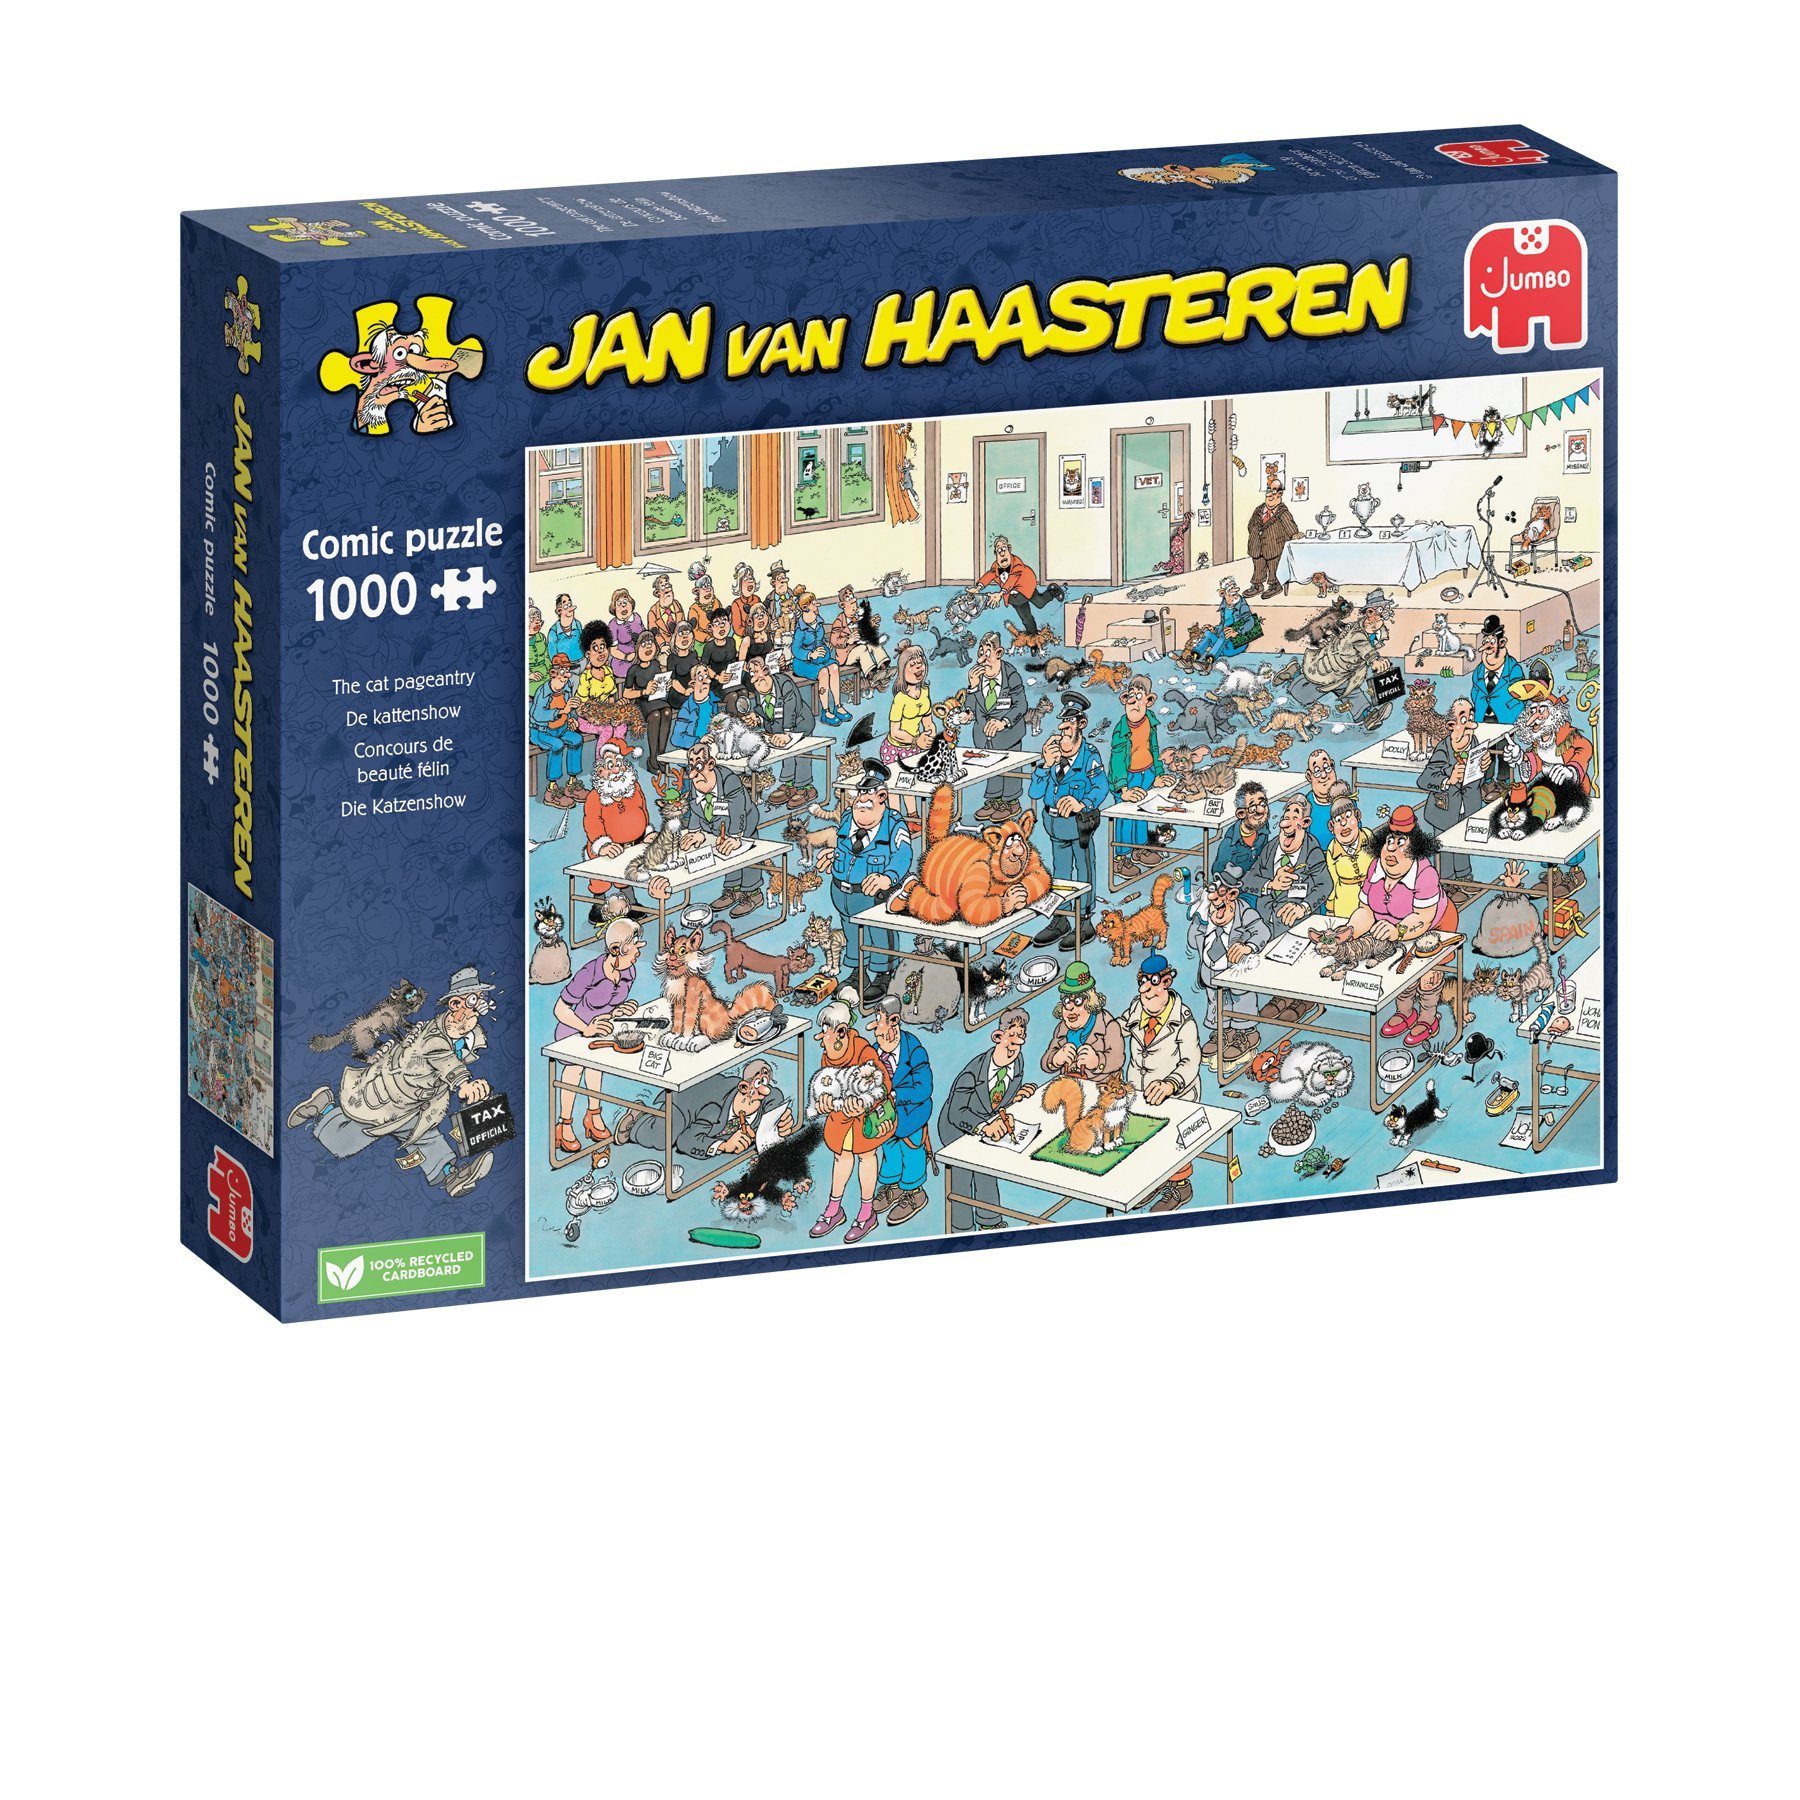 Die 1000 1110100032 Puzzleteile Katzenshow, Jumbo Spiele Puzzle Jan Haasteren van